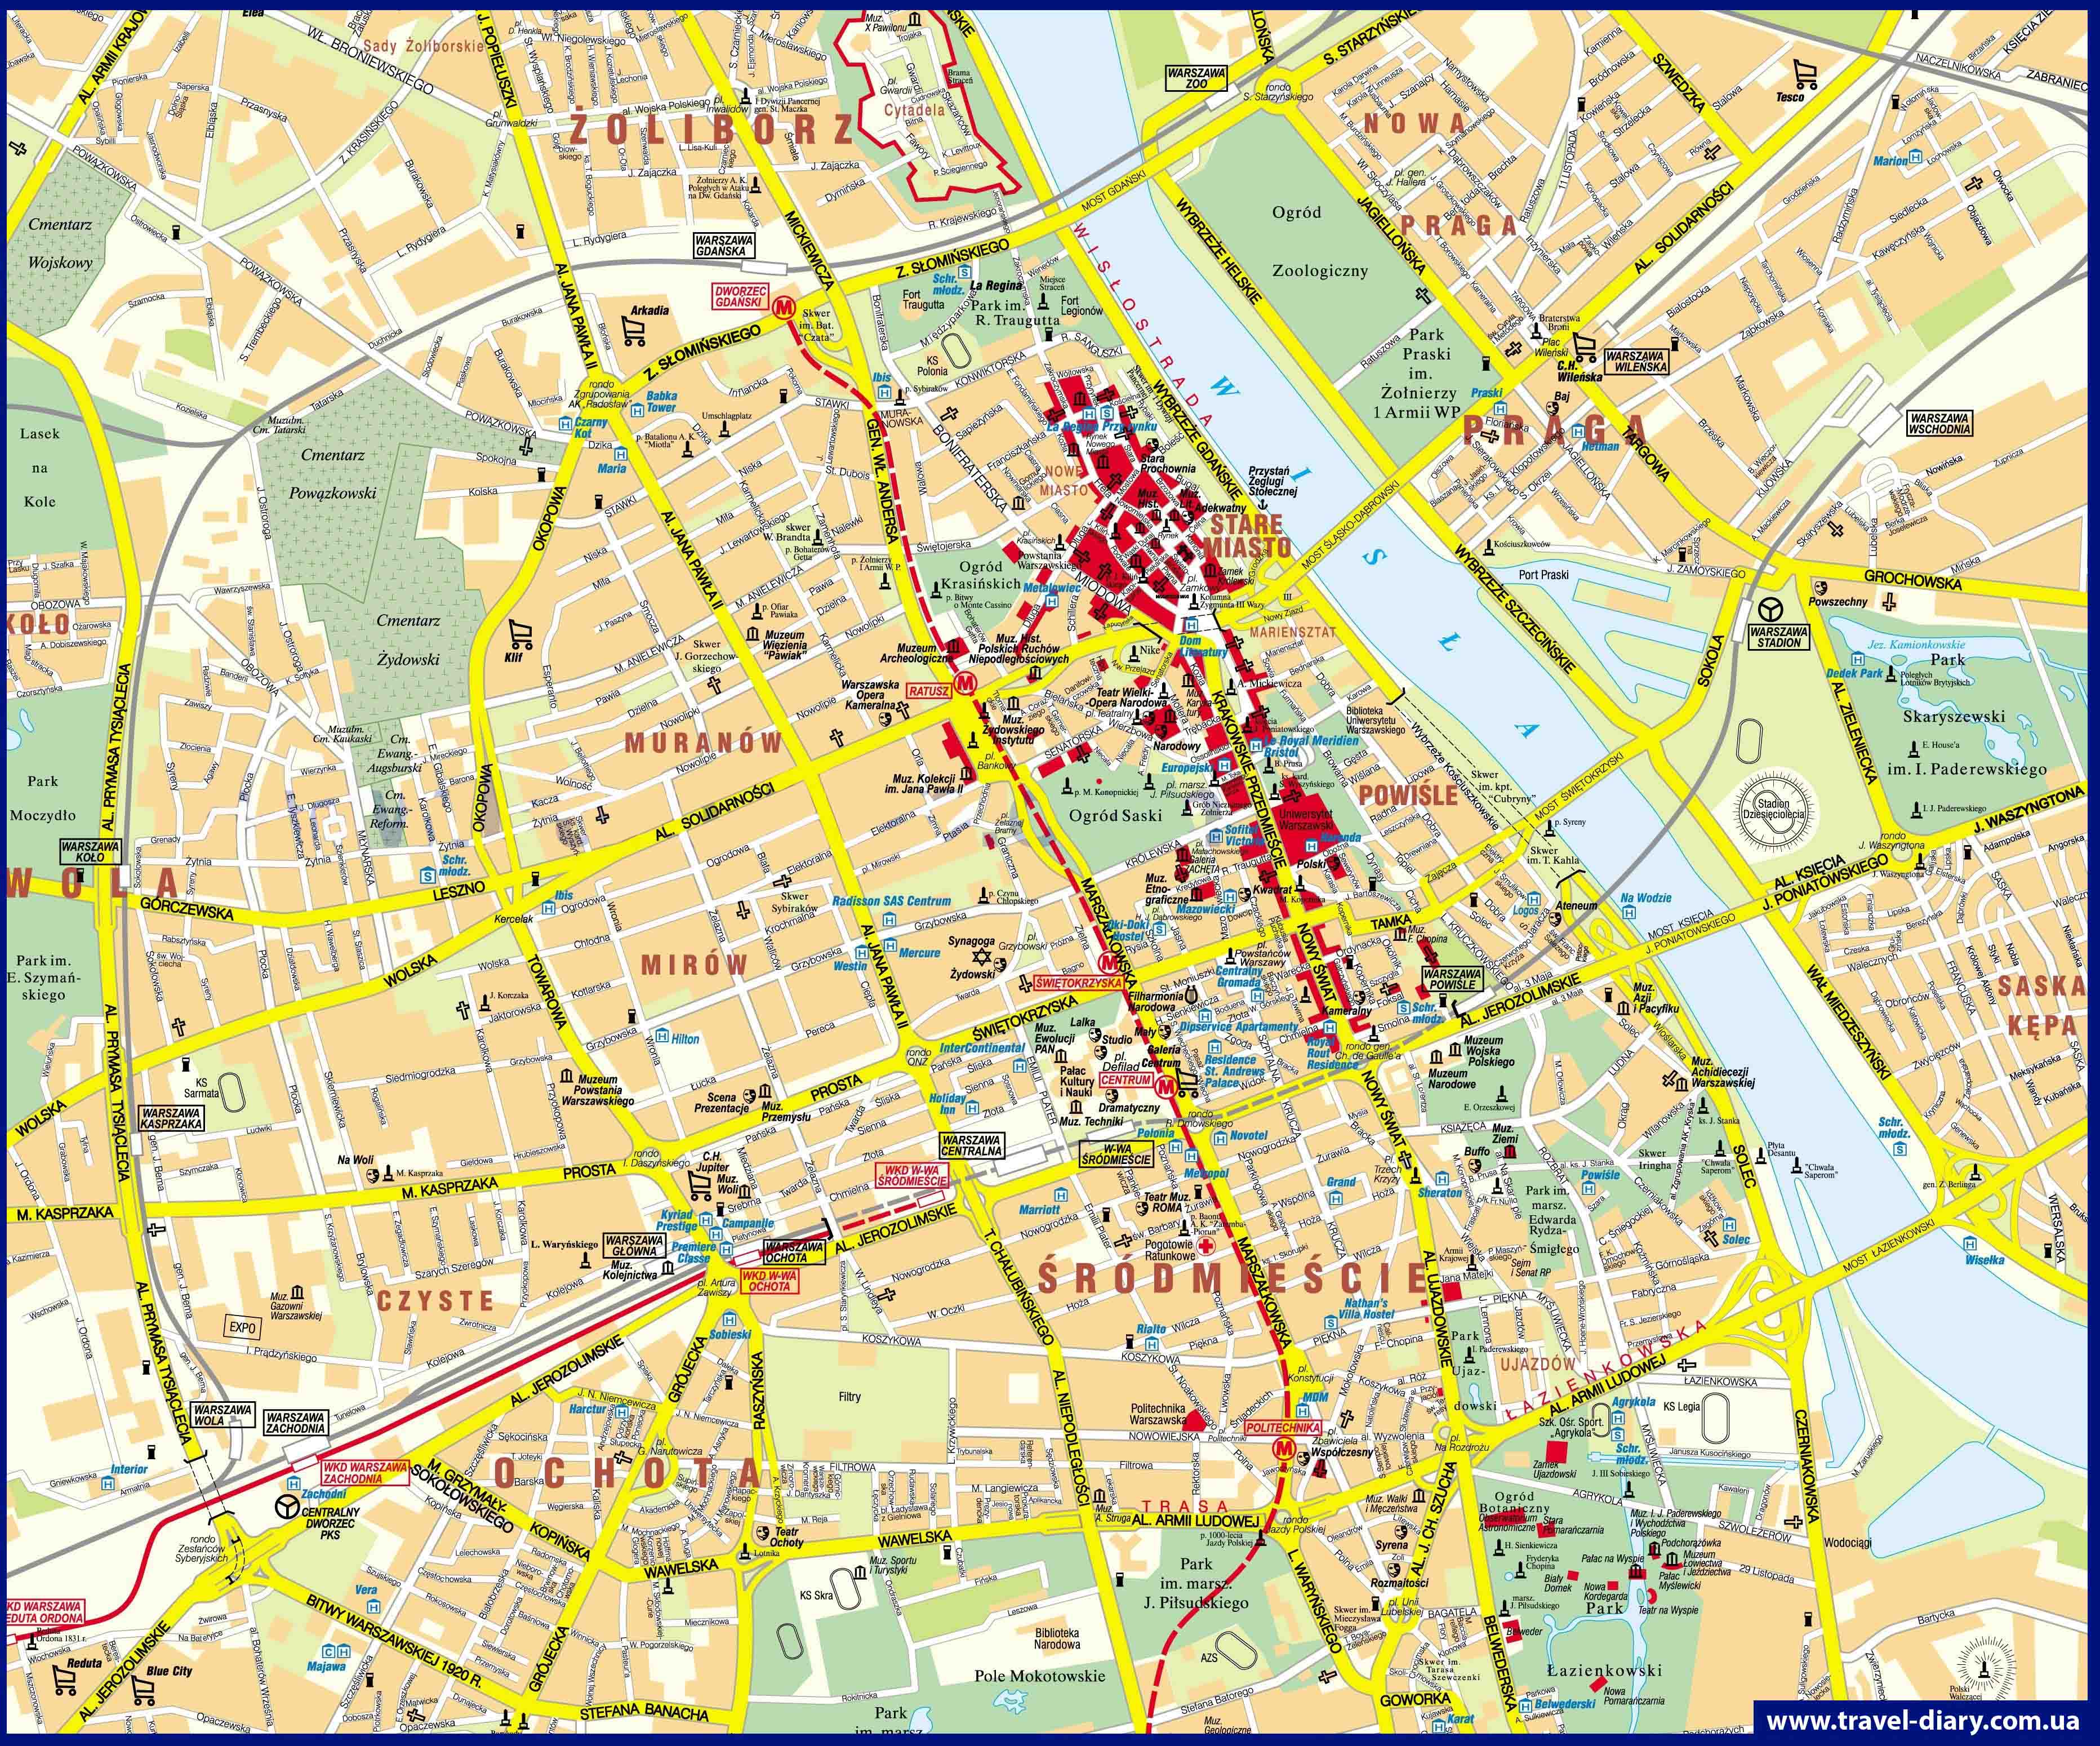 Подробная карта центра города Варшавы